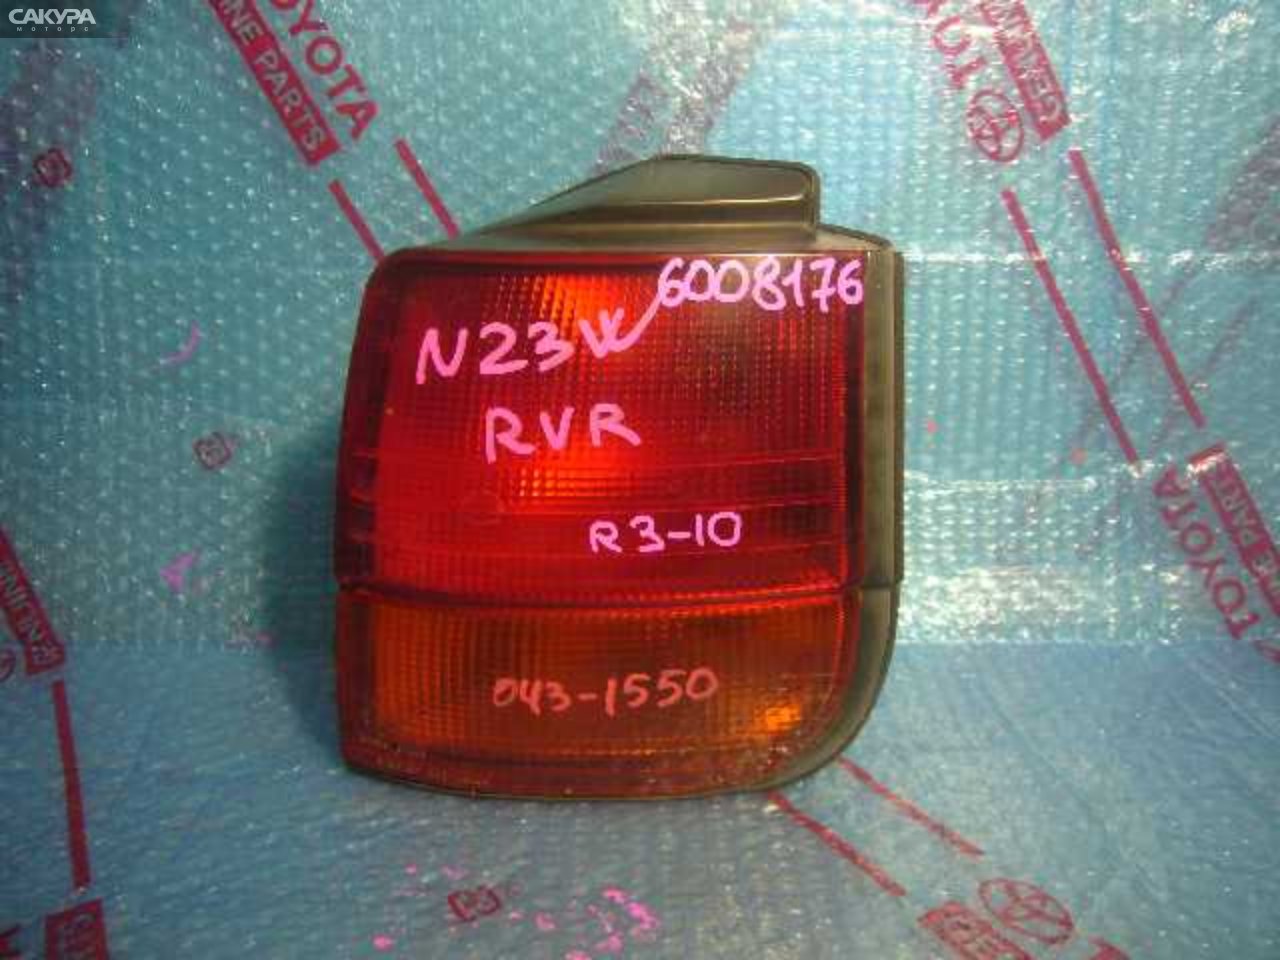 Фонарь стоп-сигнала правый Mitsubishi RVR N23W 043-1550: купить в Сакура Кемерово.